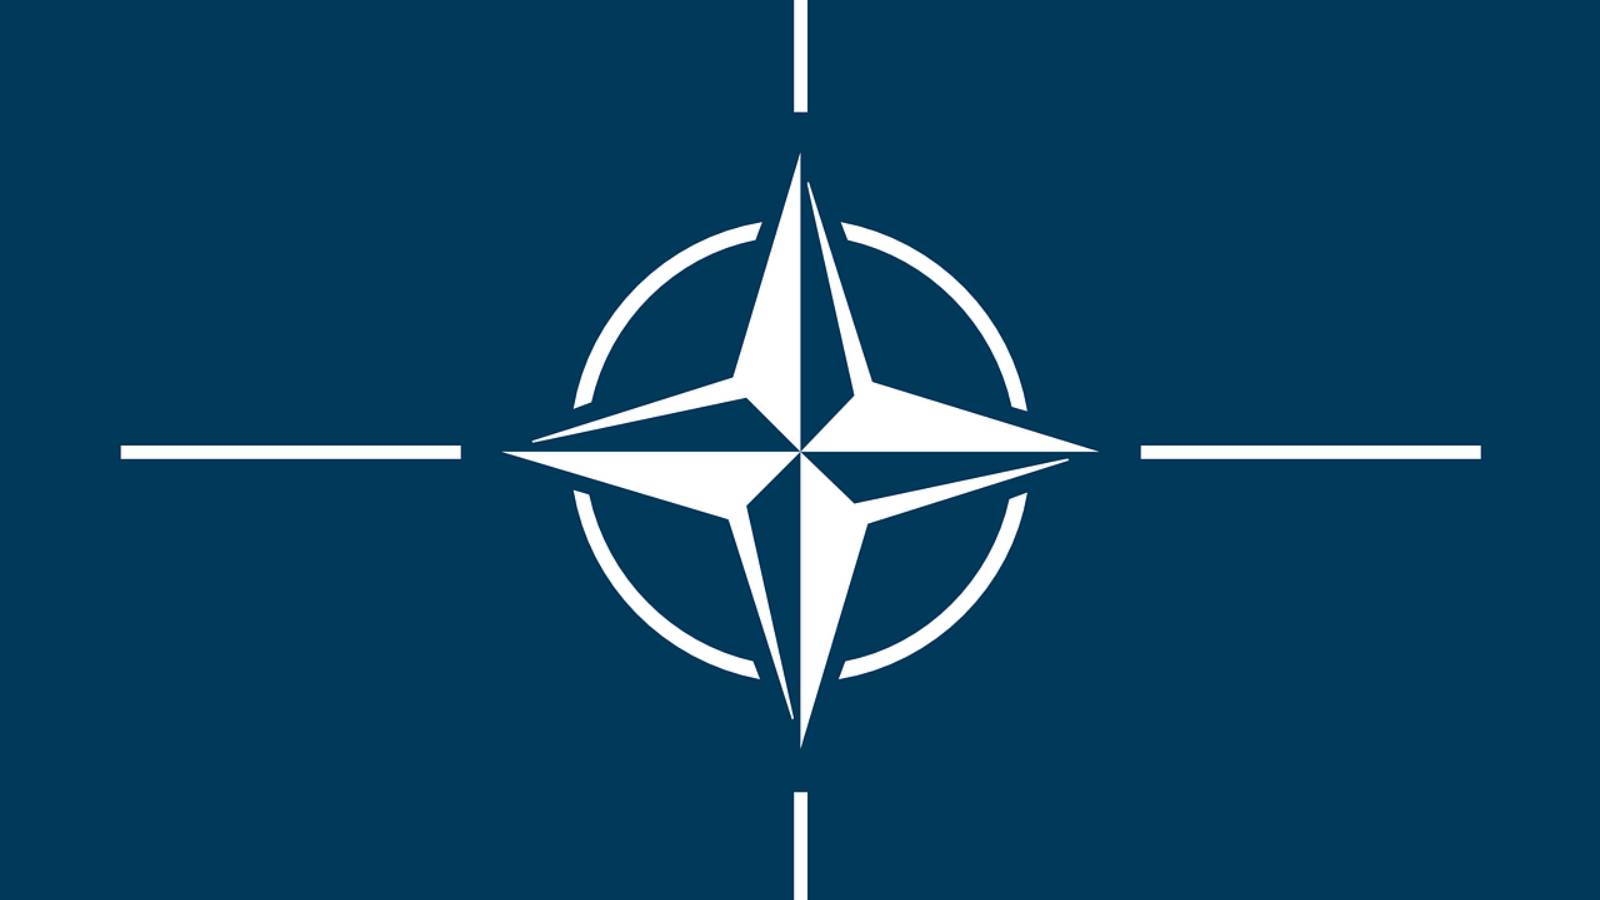 NATO-Wladimir Putin scheitert am Ukraine-Krieg (VIDEO)